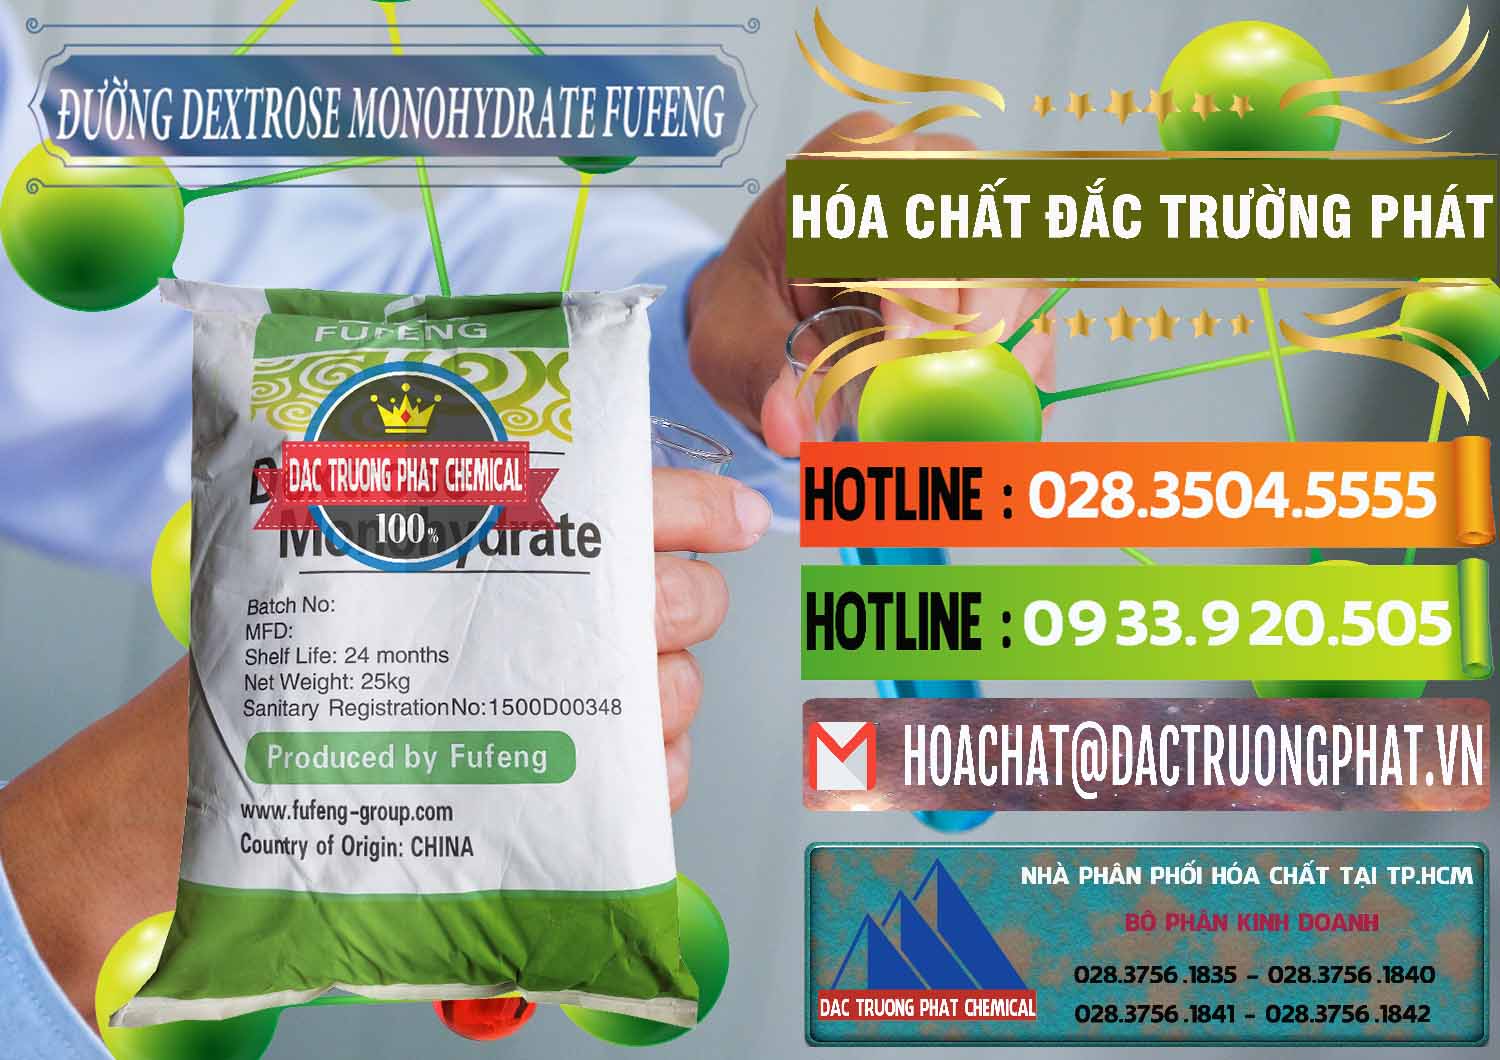 Đơn vị chuyên cung cấp _ bán Đường Dextrose Monohydrate Food Grade Fufeng Trung Quốc China - 0223 - Nơi chuyên phân phối & cung ứng hóa chất tại TP.HCM - cungcaphoachat.com.vn